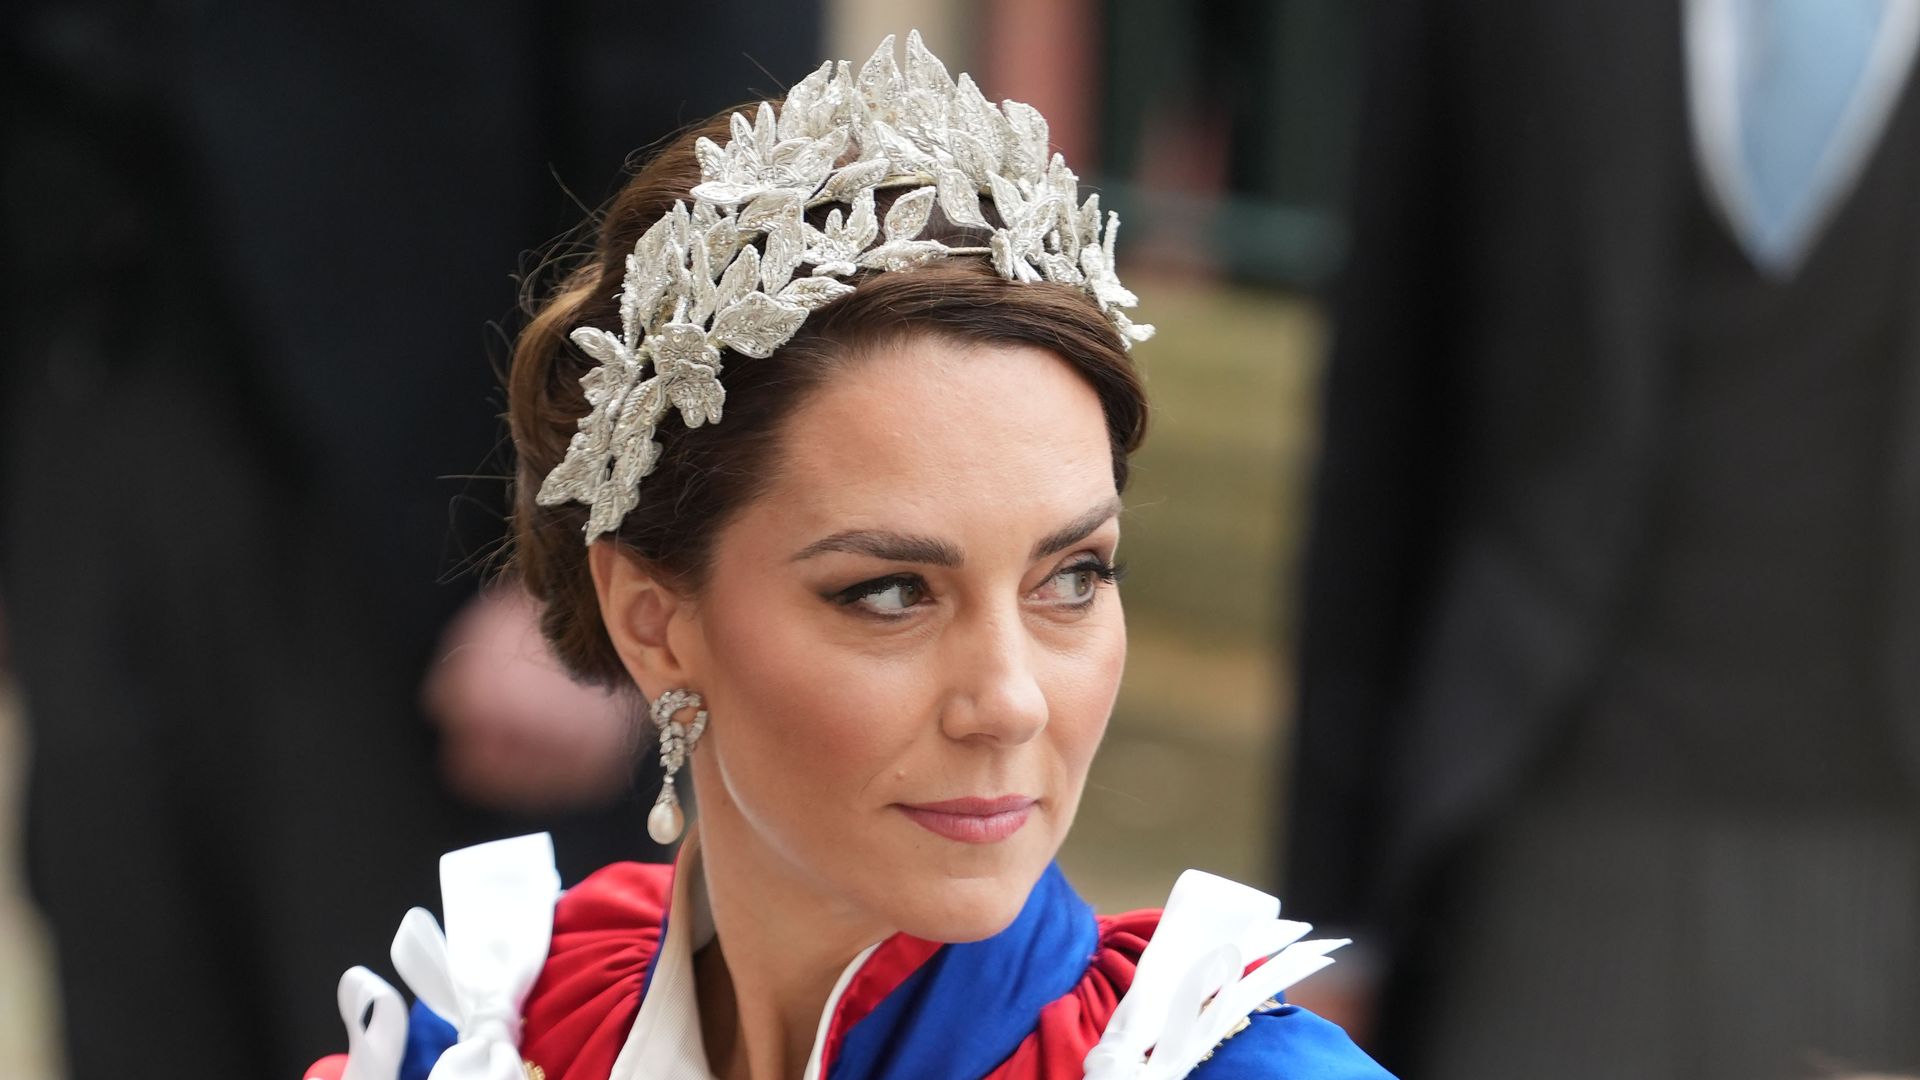 The Princess of Wales at the coronation